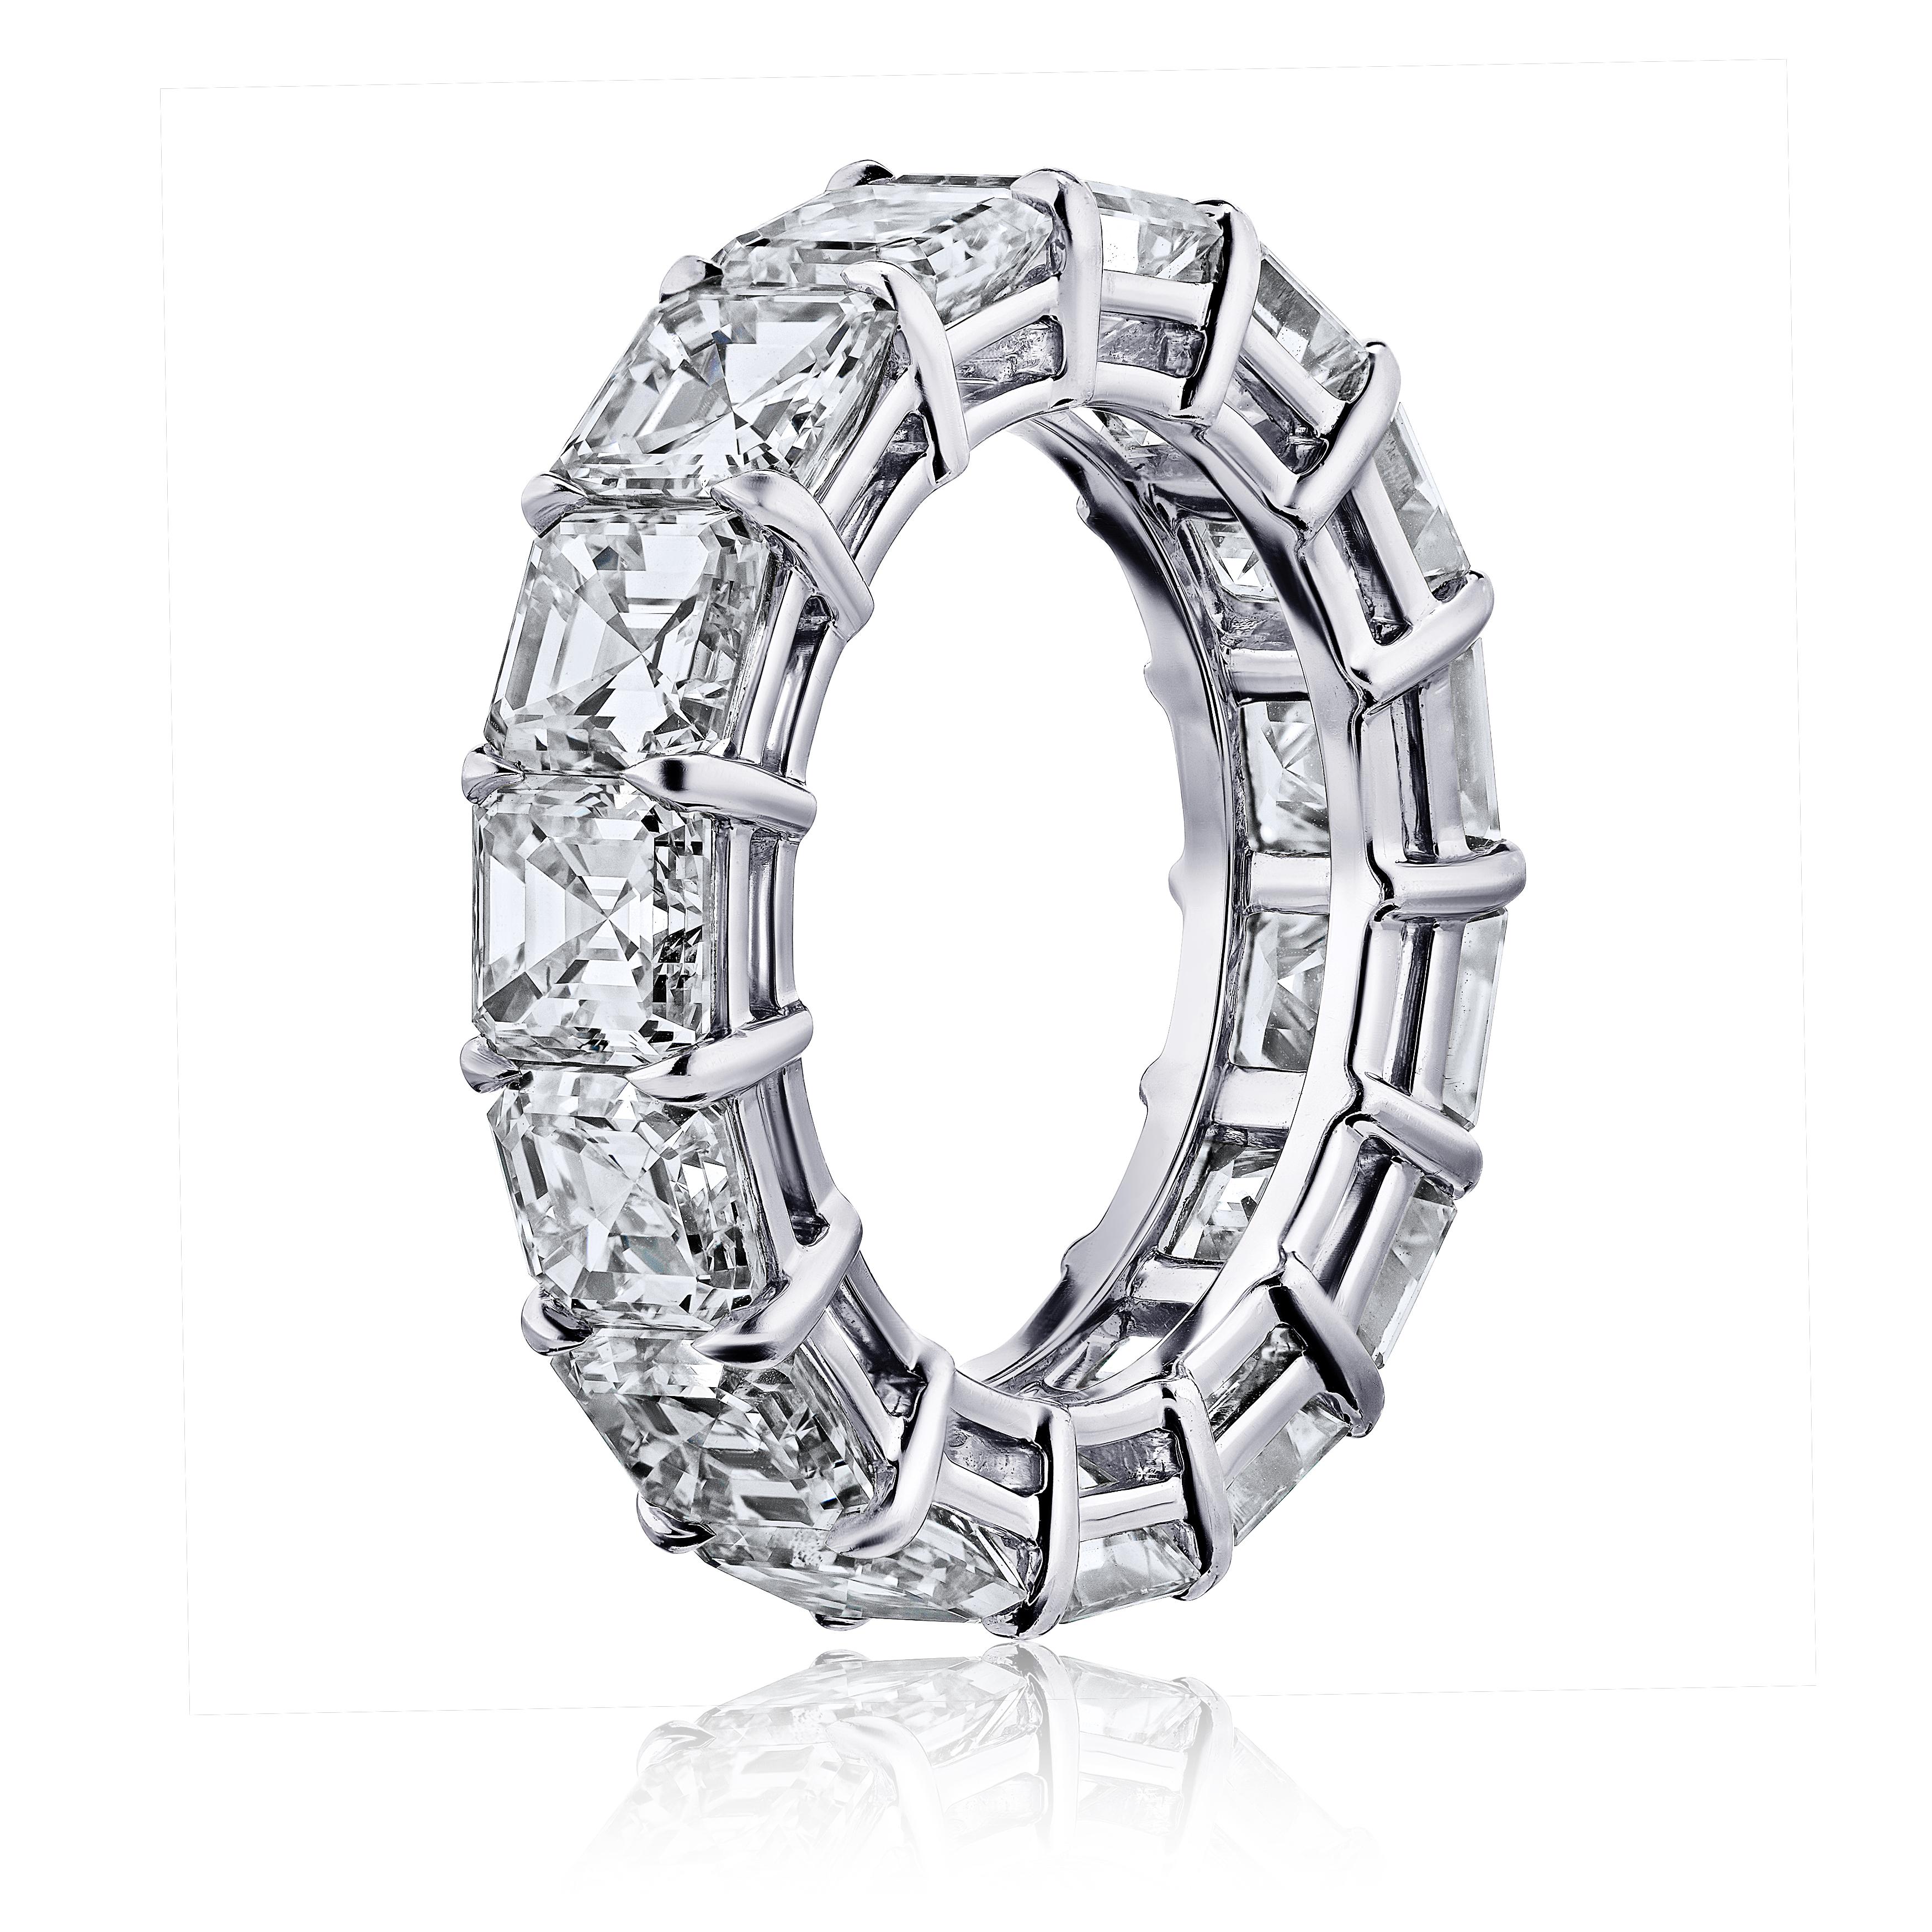 Asher Cut Diamantring Platin Ewigkeit Band geteilt Zinken Stil mit einer Galerie.
16 perfekt aufeinander abgestimmte Diamanten mit einem Mindestgewicht von 6,75 Karat. G.I.A.-Zertifikate für jeden Diamanten . Die Farben reichen von D-F. VVS1-VS2 in